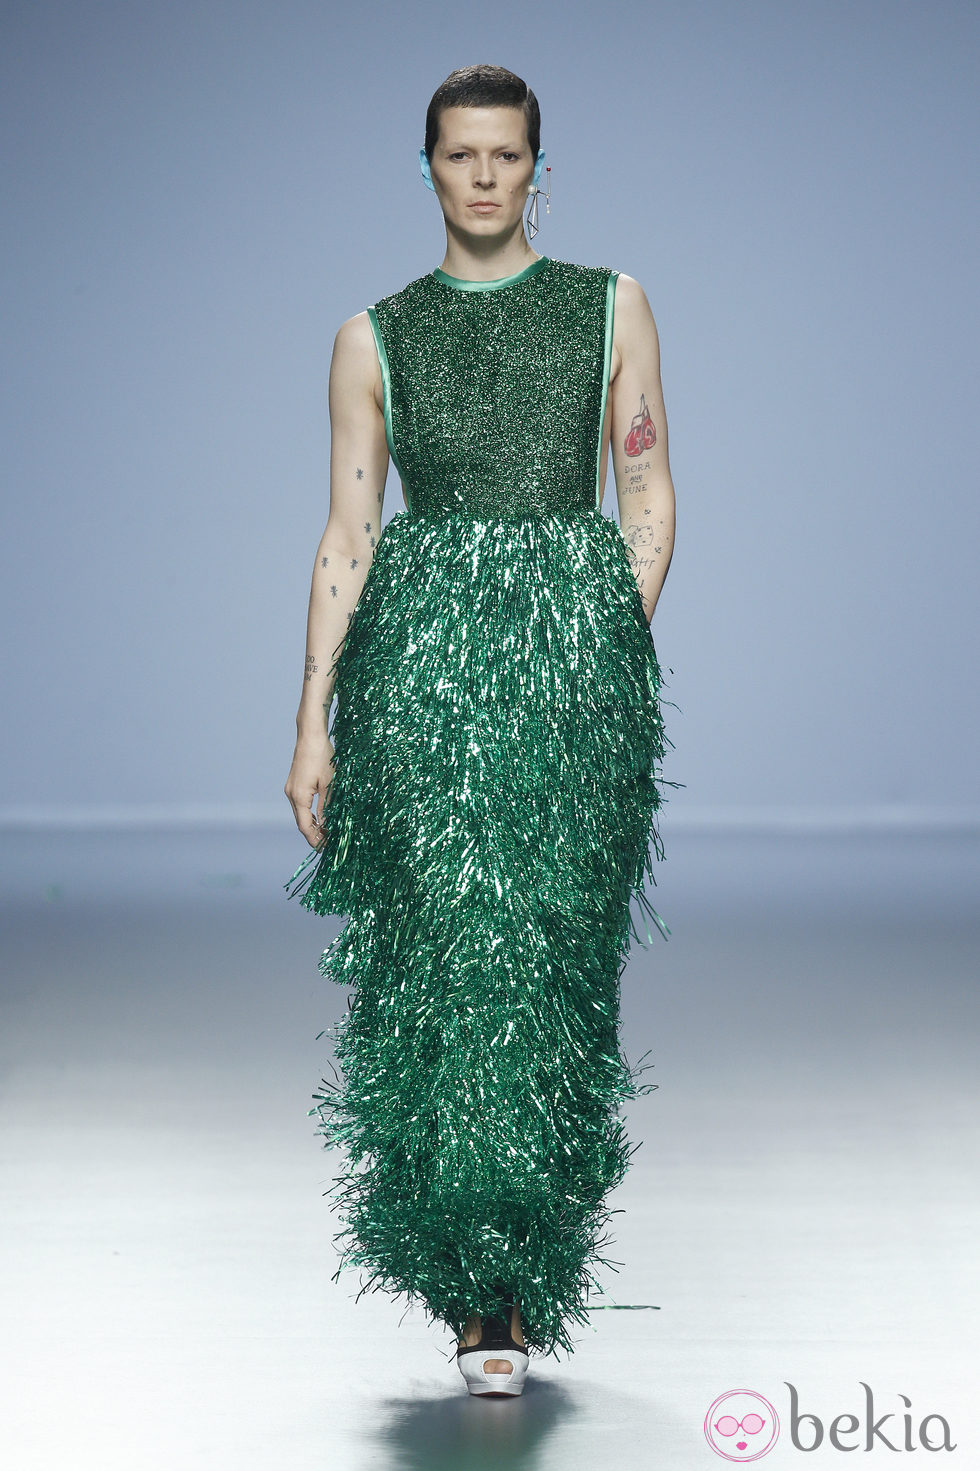 Bimba Bosé con un vestido de espumillón para Davidelfin en Madrid Fashion Week primavera/verano 2015